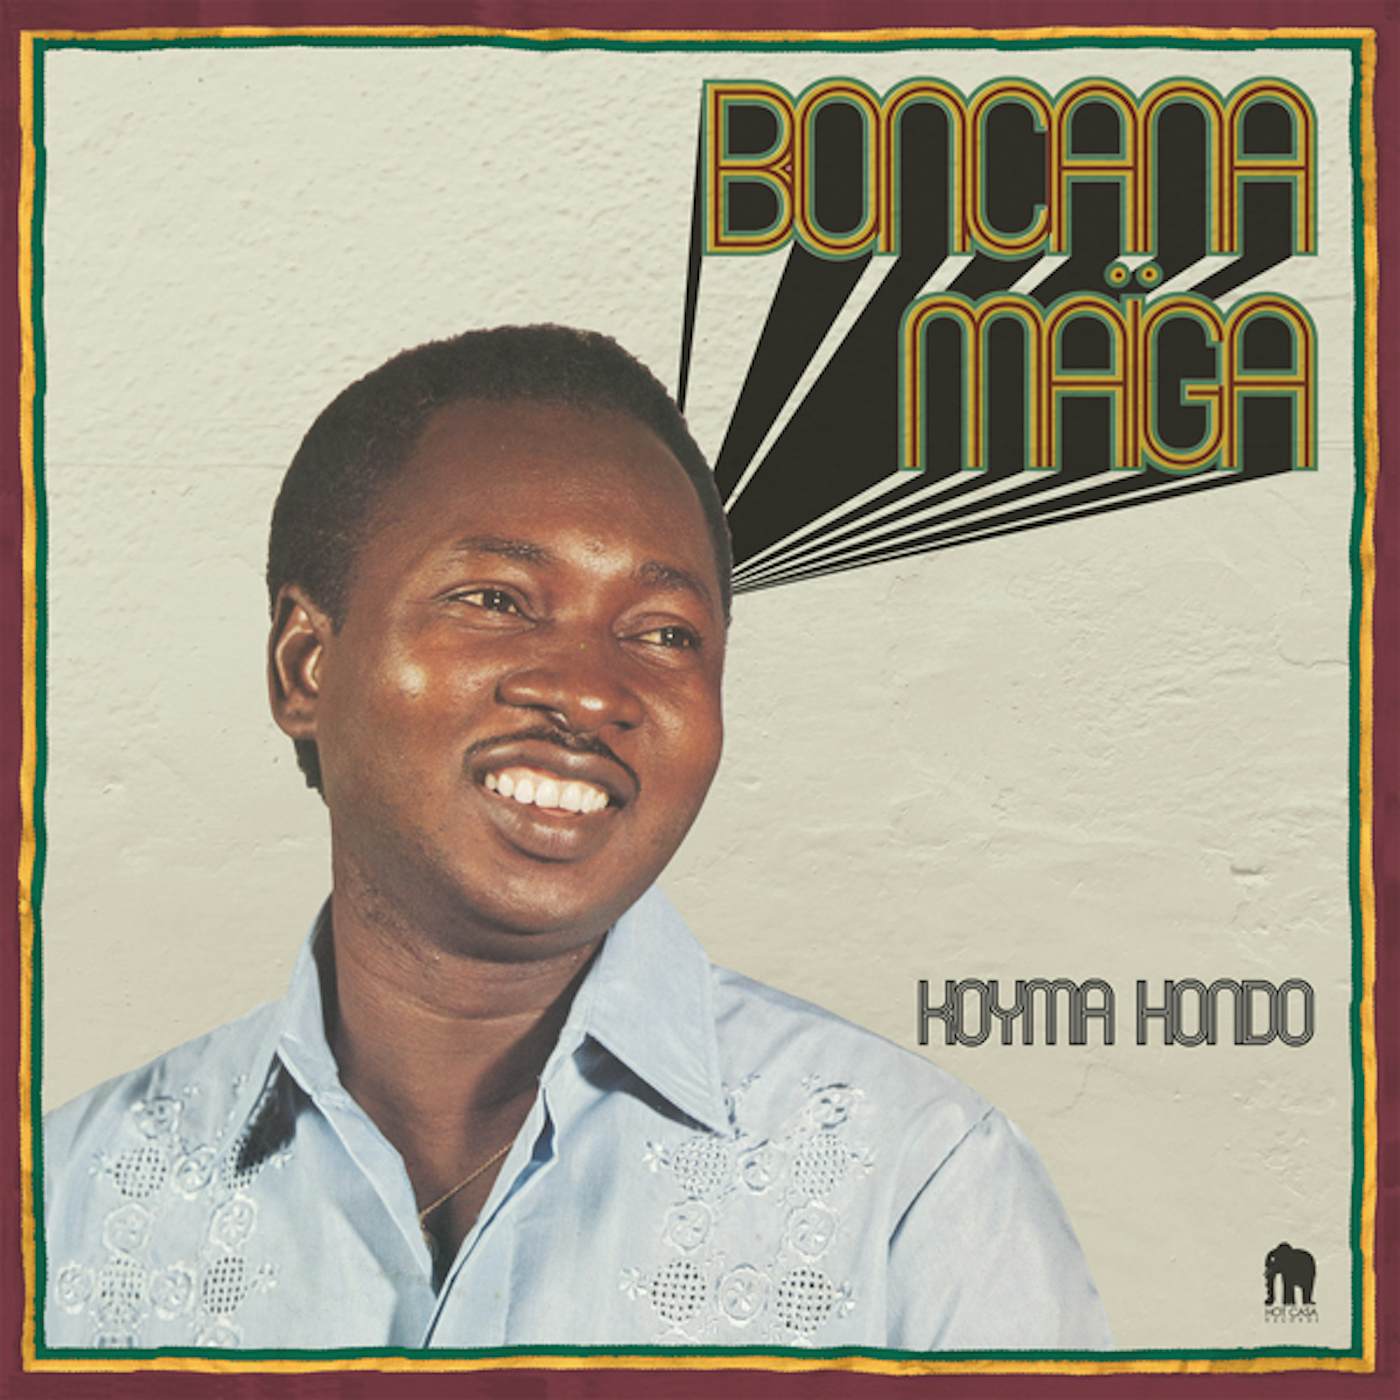 Boncana Maiga KOYMA HONDO Vinyl Record